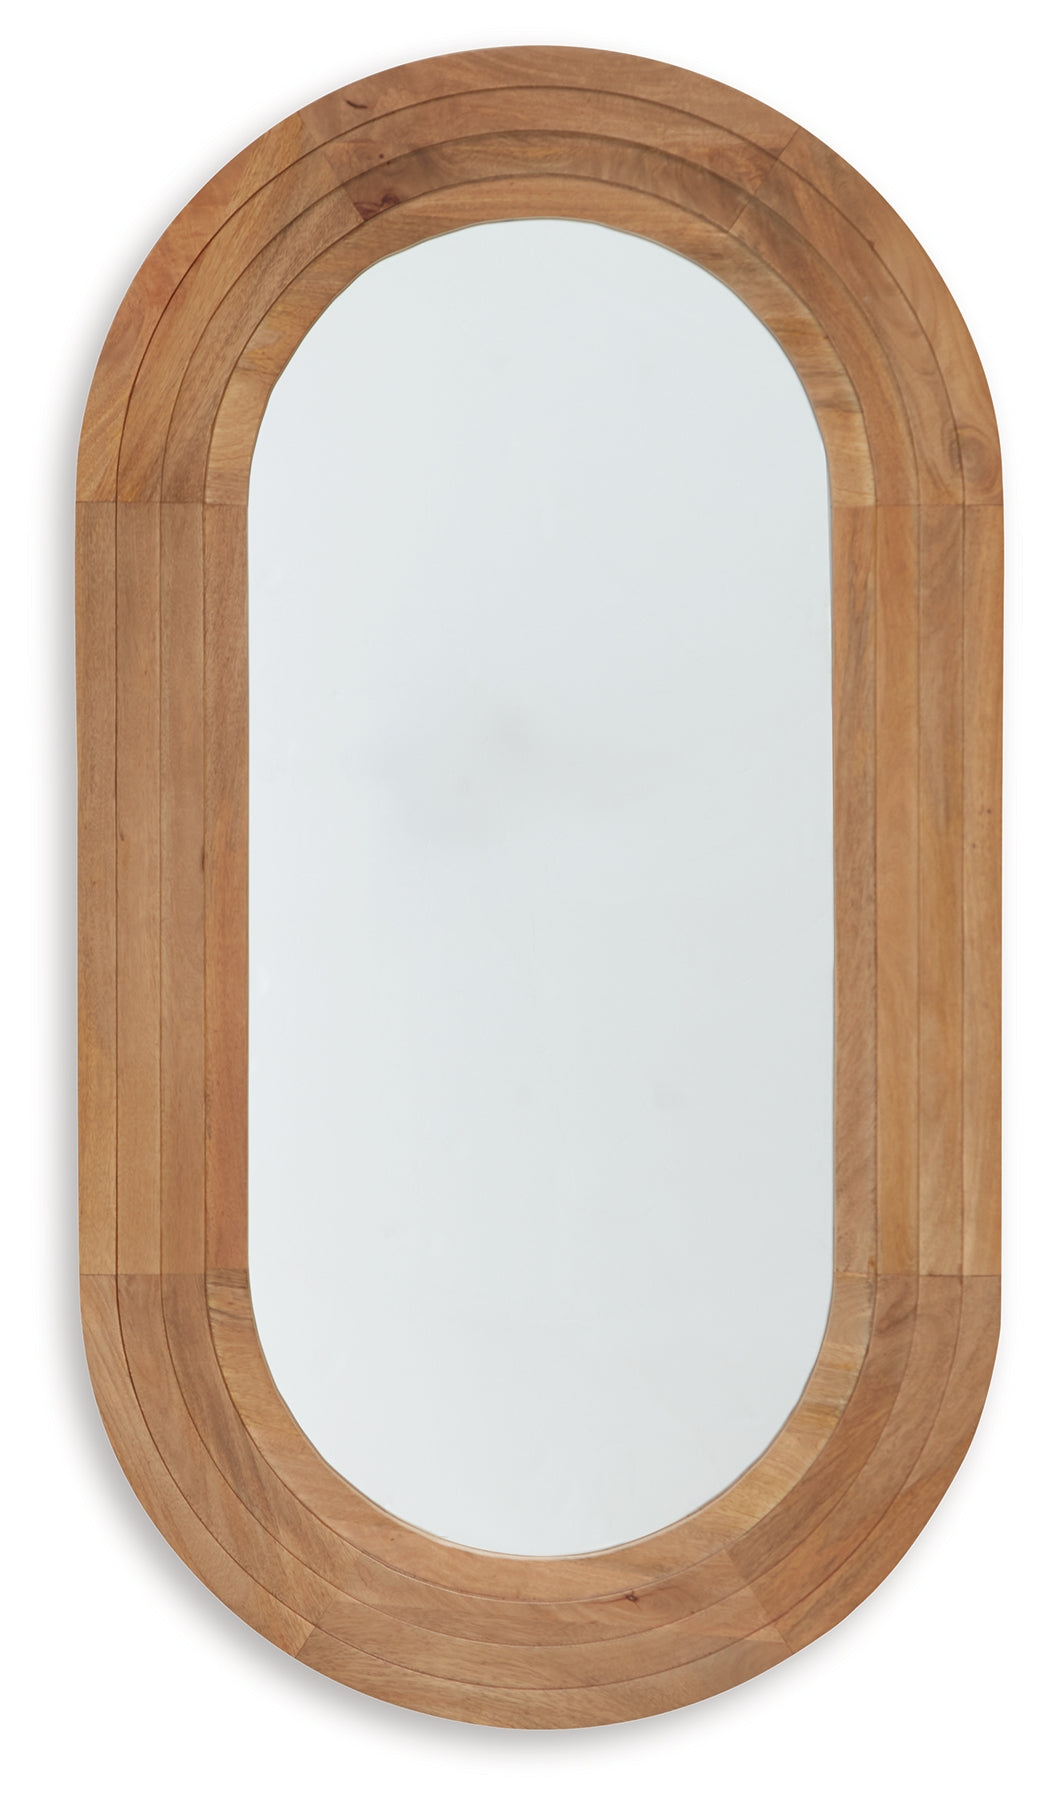 Daverly Brown Accent Mirror - A8010326 - Luna Furniture